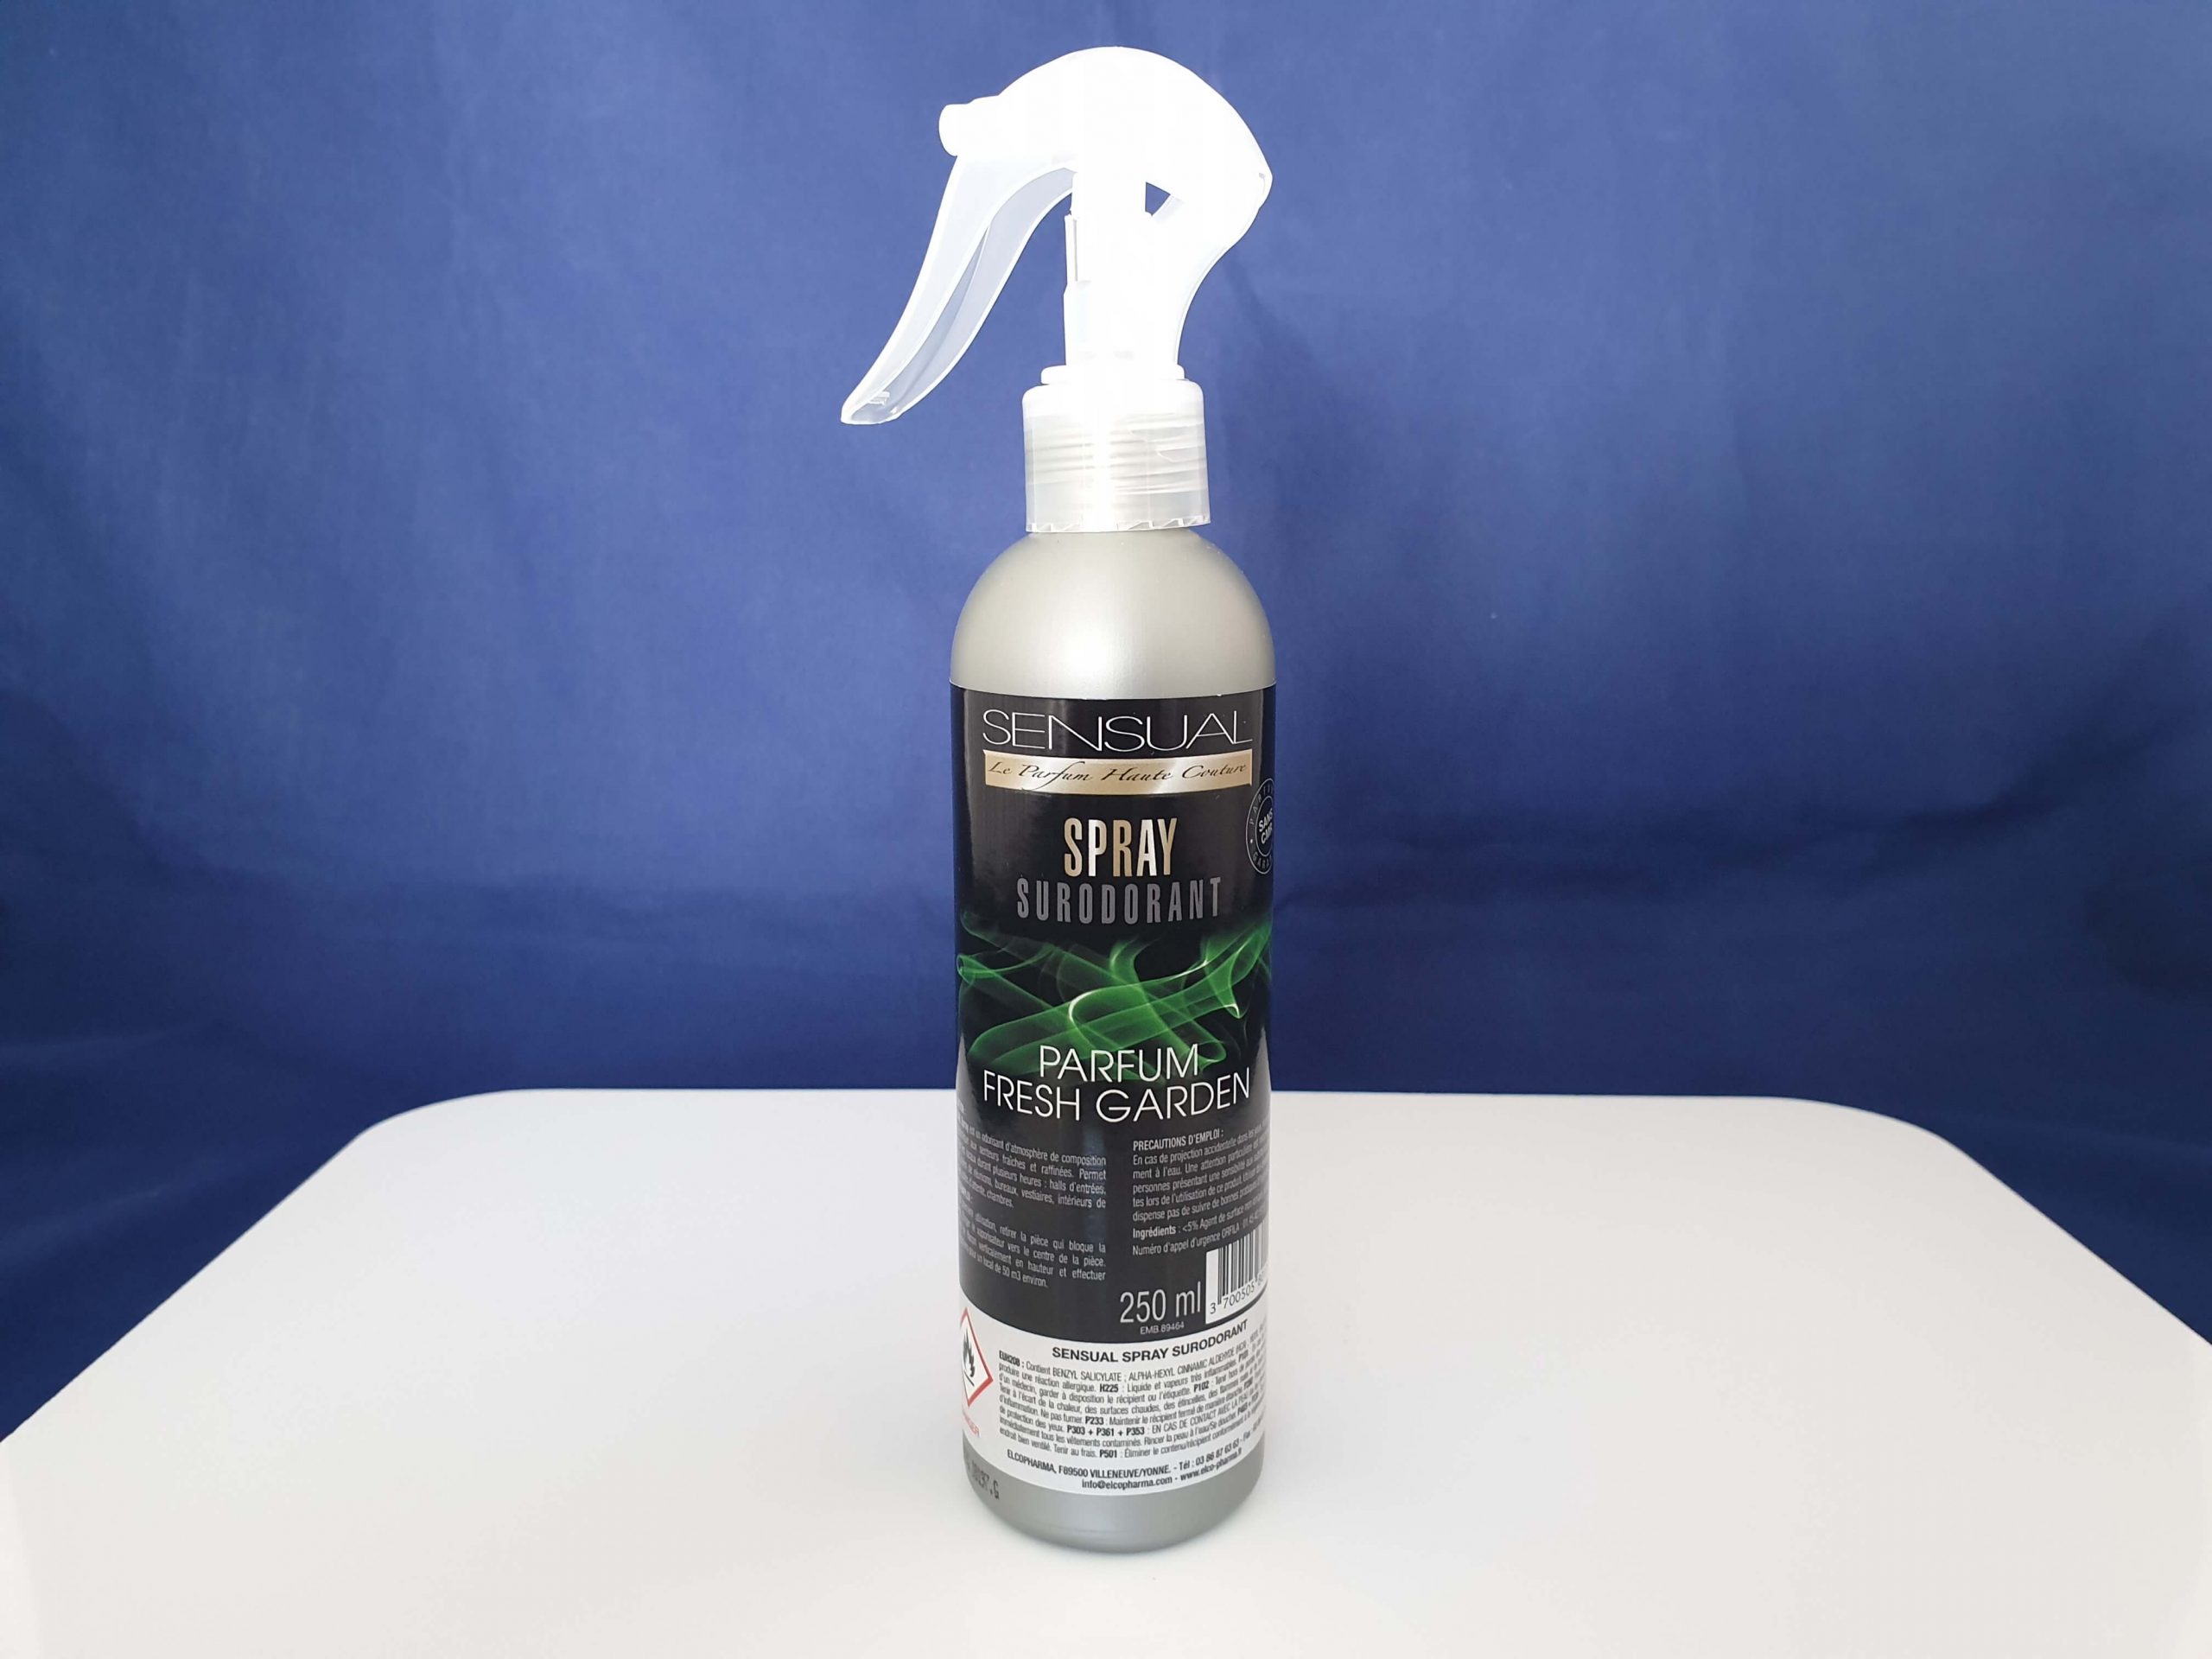 Geruchsneutralisierer Spray - Natürlicher Lufterfrischer mit